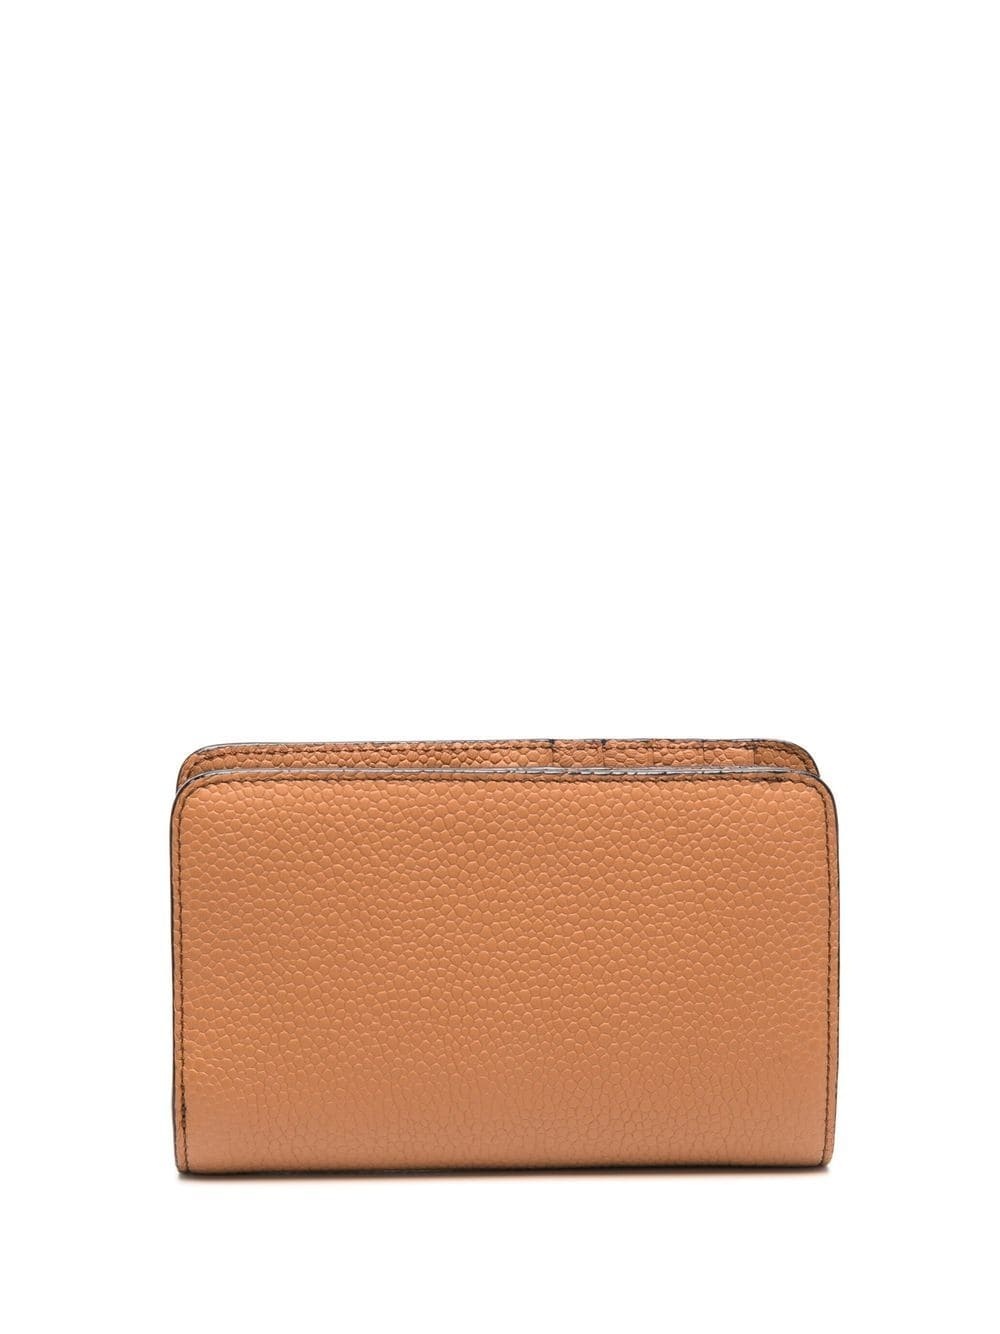 zip compact wallet - 2